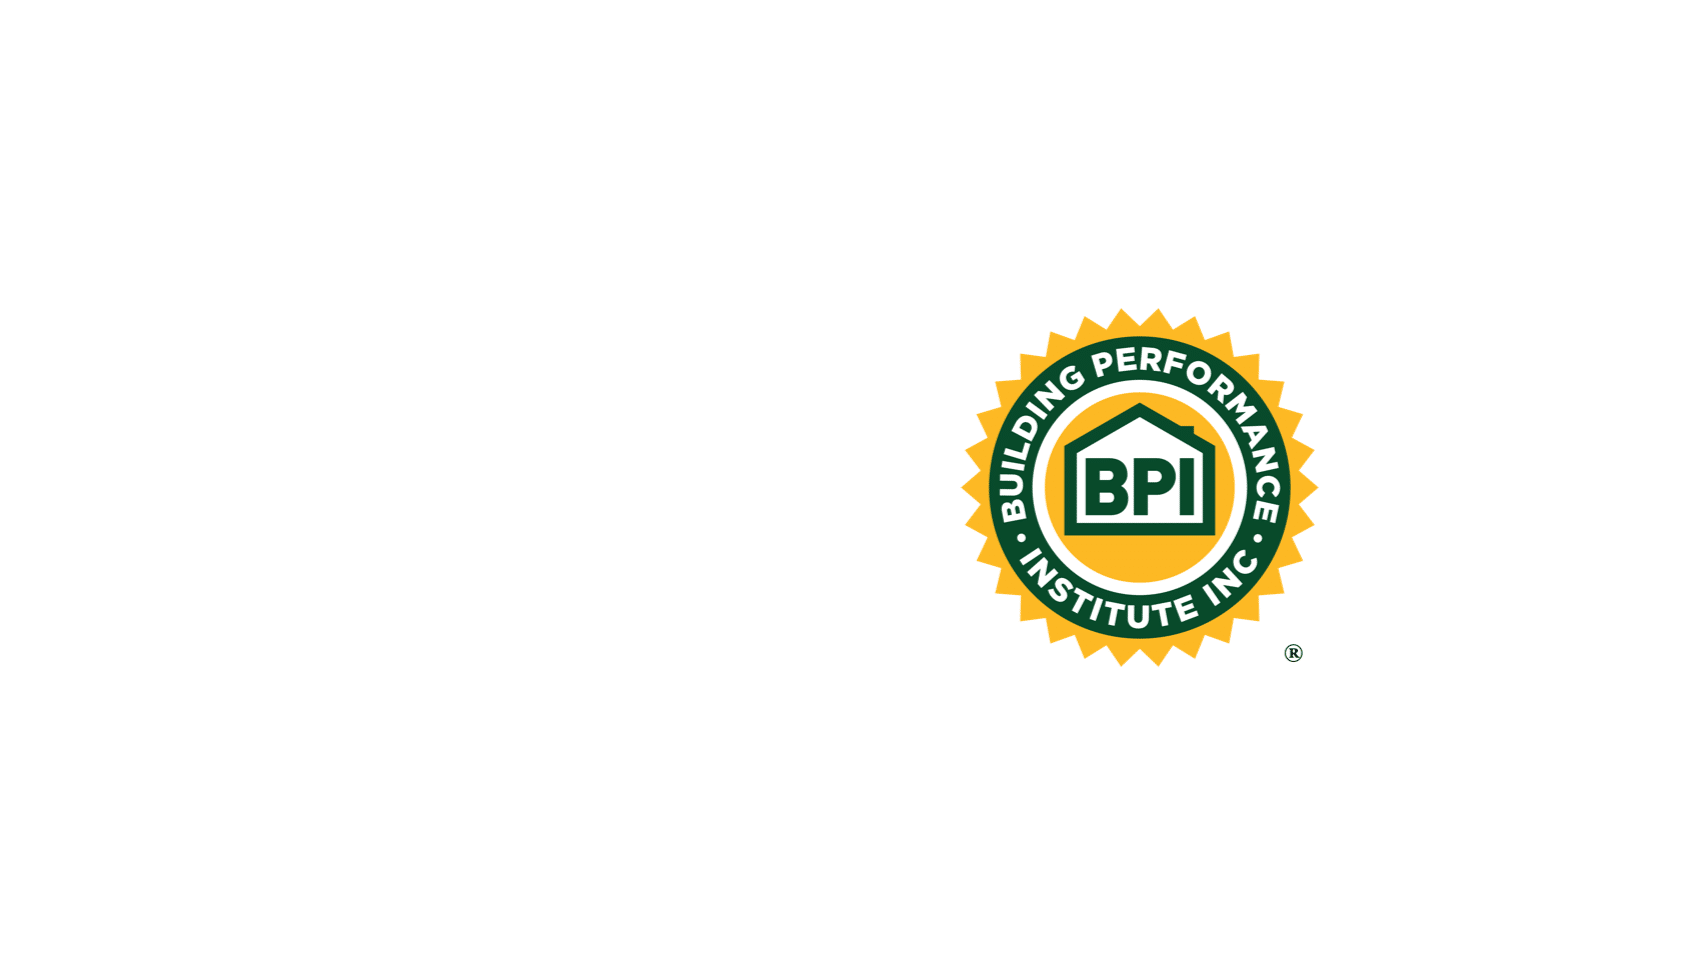 Building Performance Institute Logo